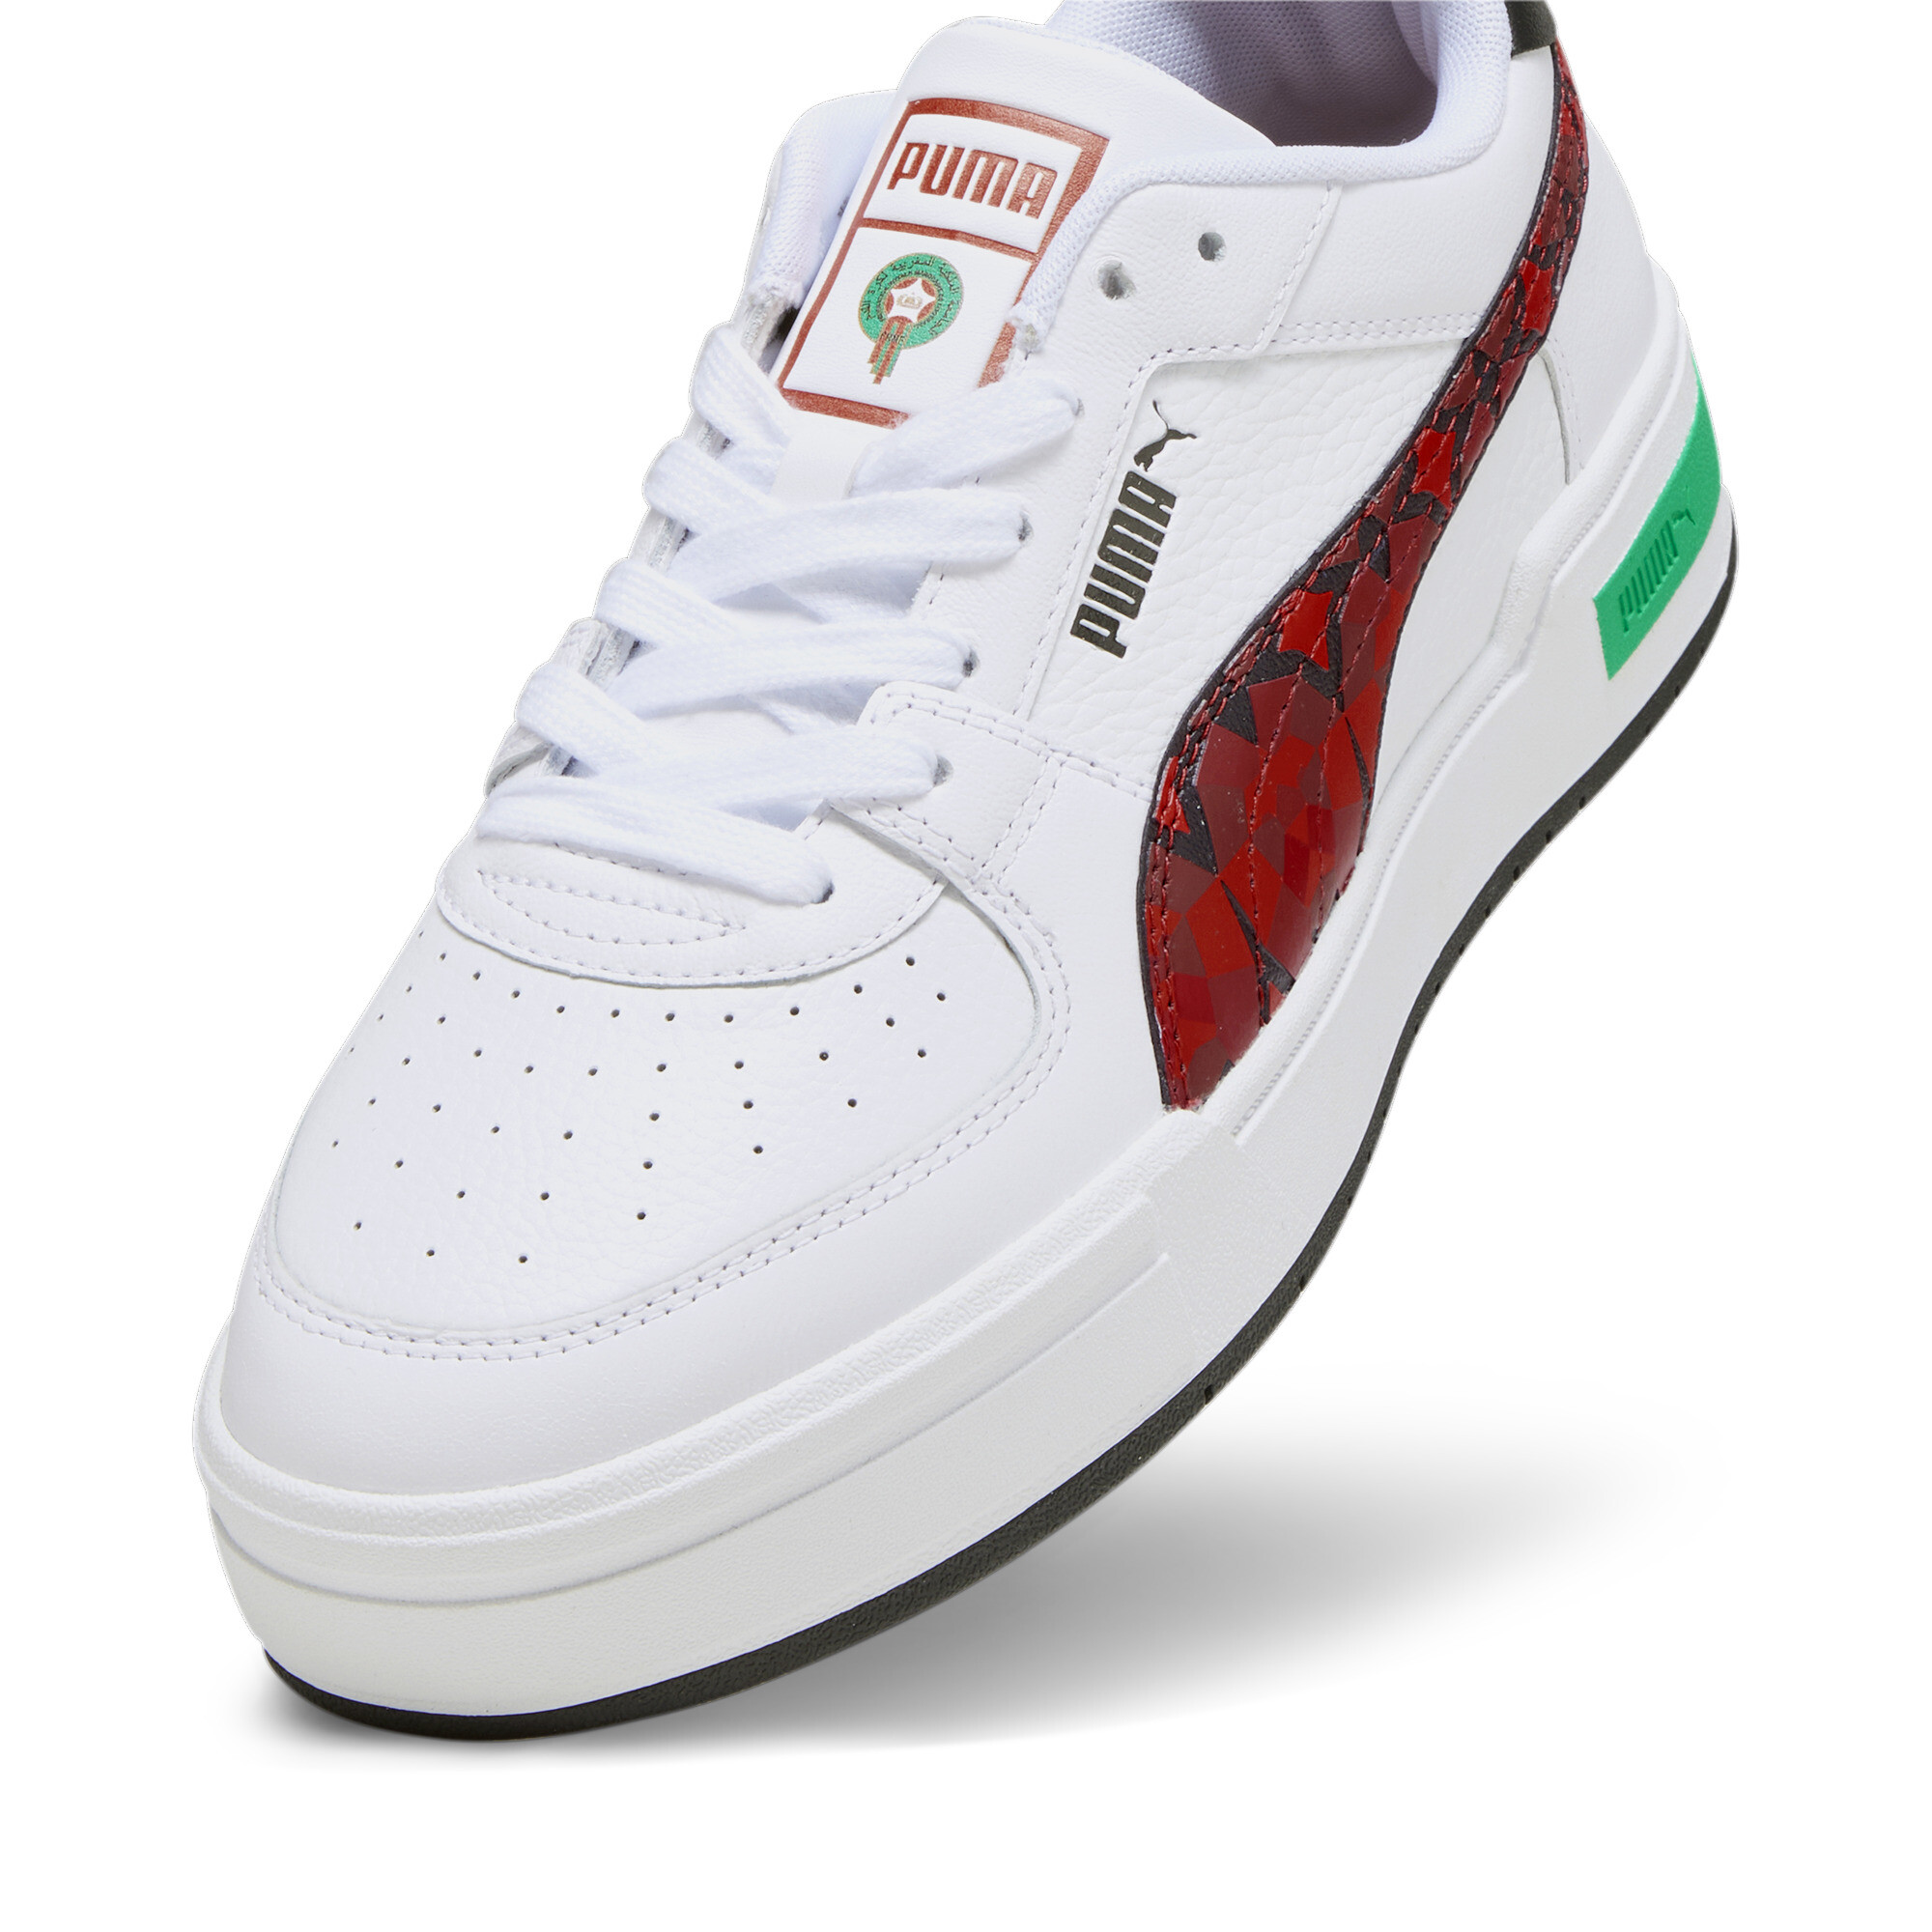 Men's PUMA CA Pro Morocco Football Sneakers In White, Size EU 38.5